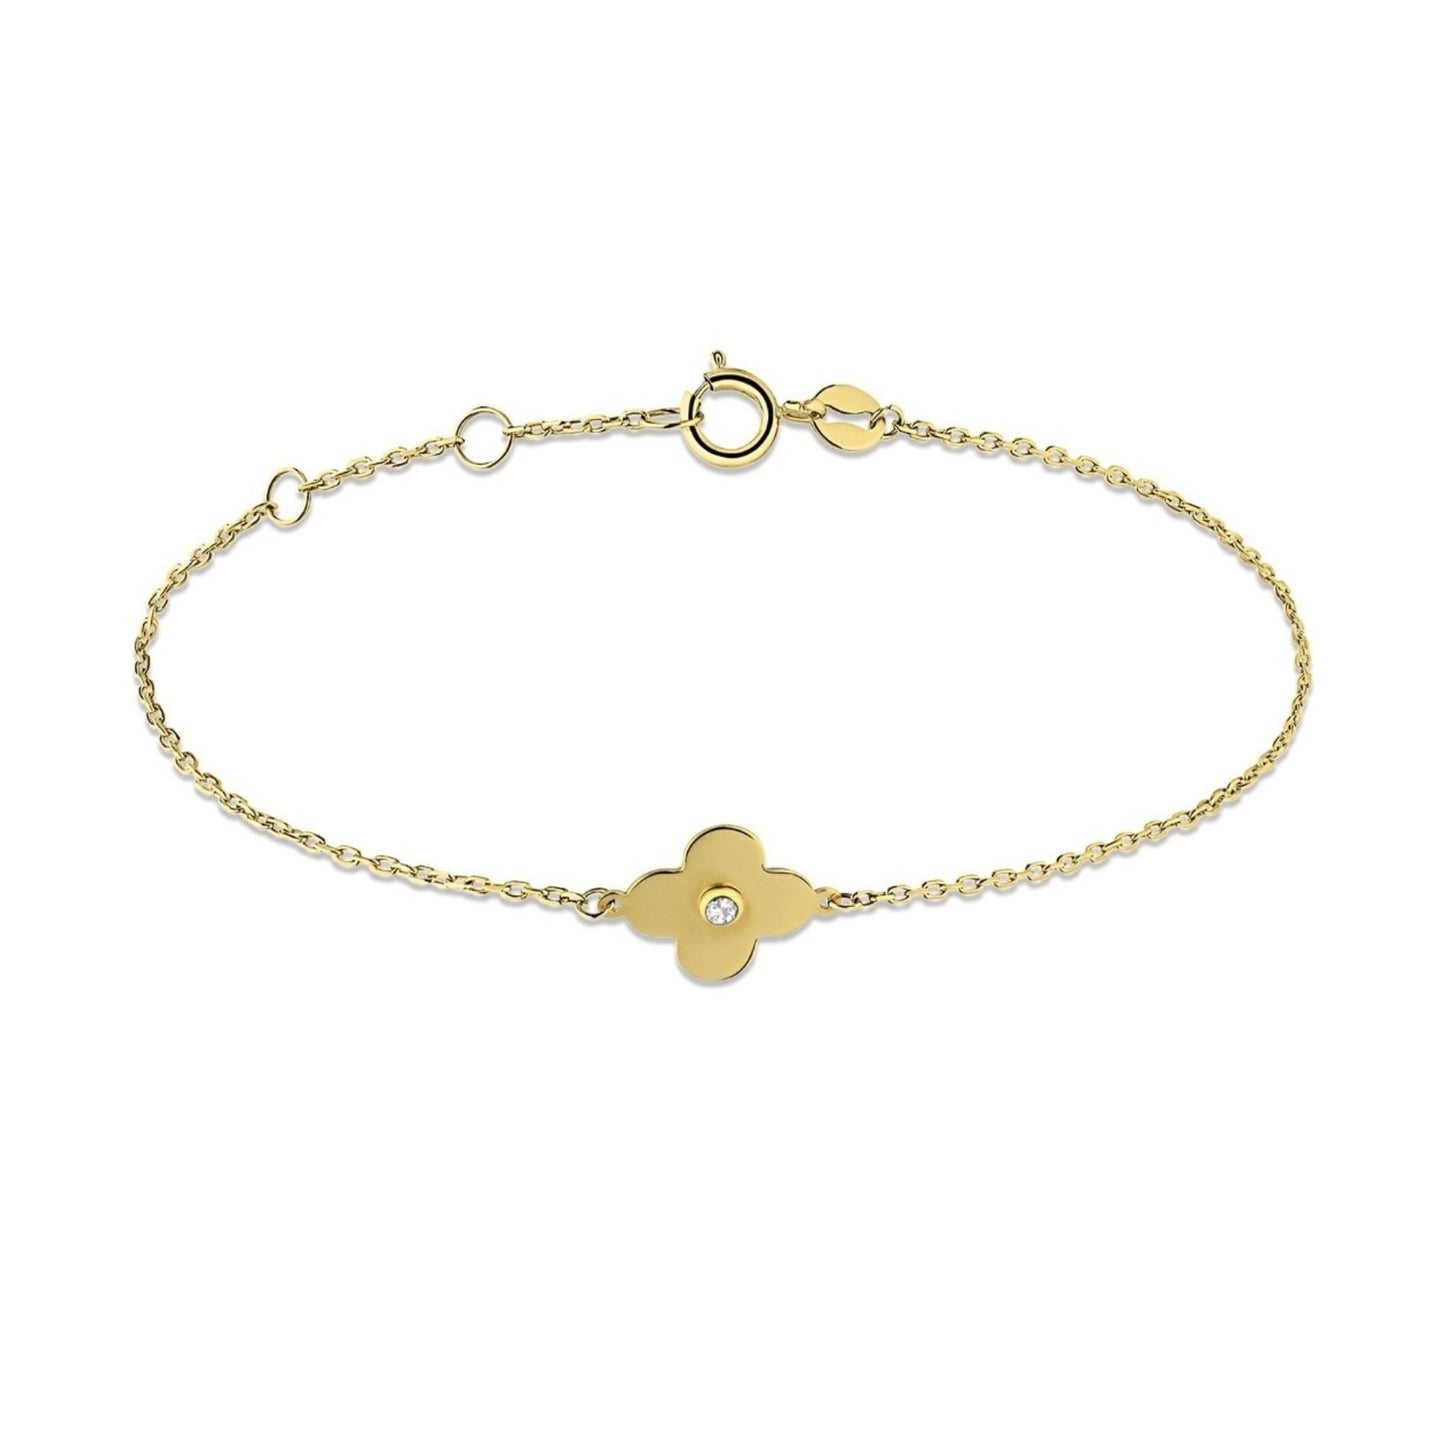 Golden Clover - 14K Gold Bracelet with Zirconia